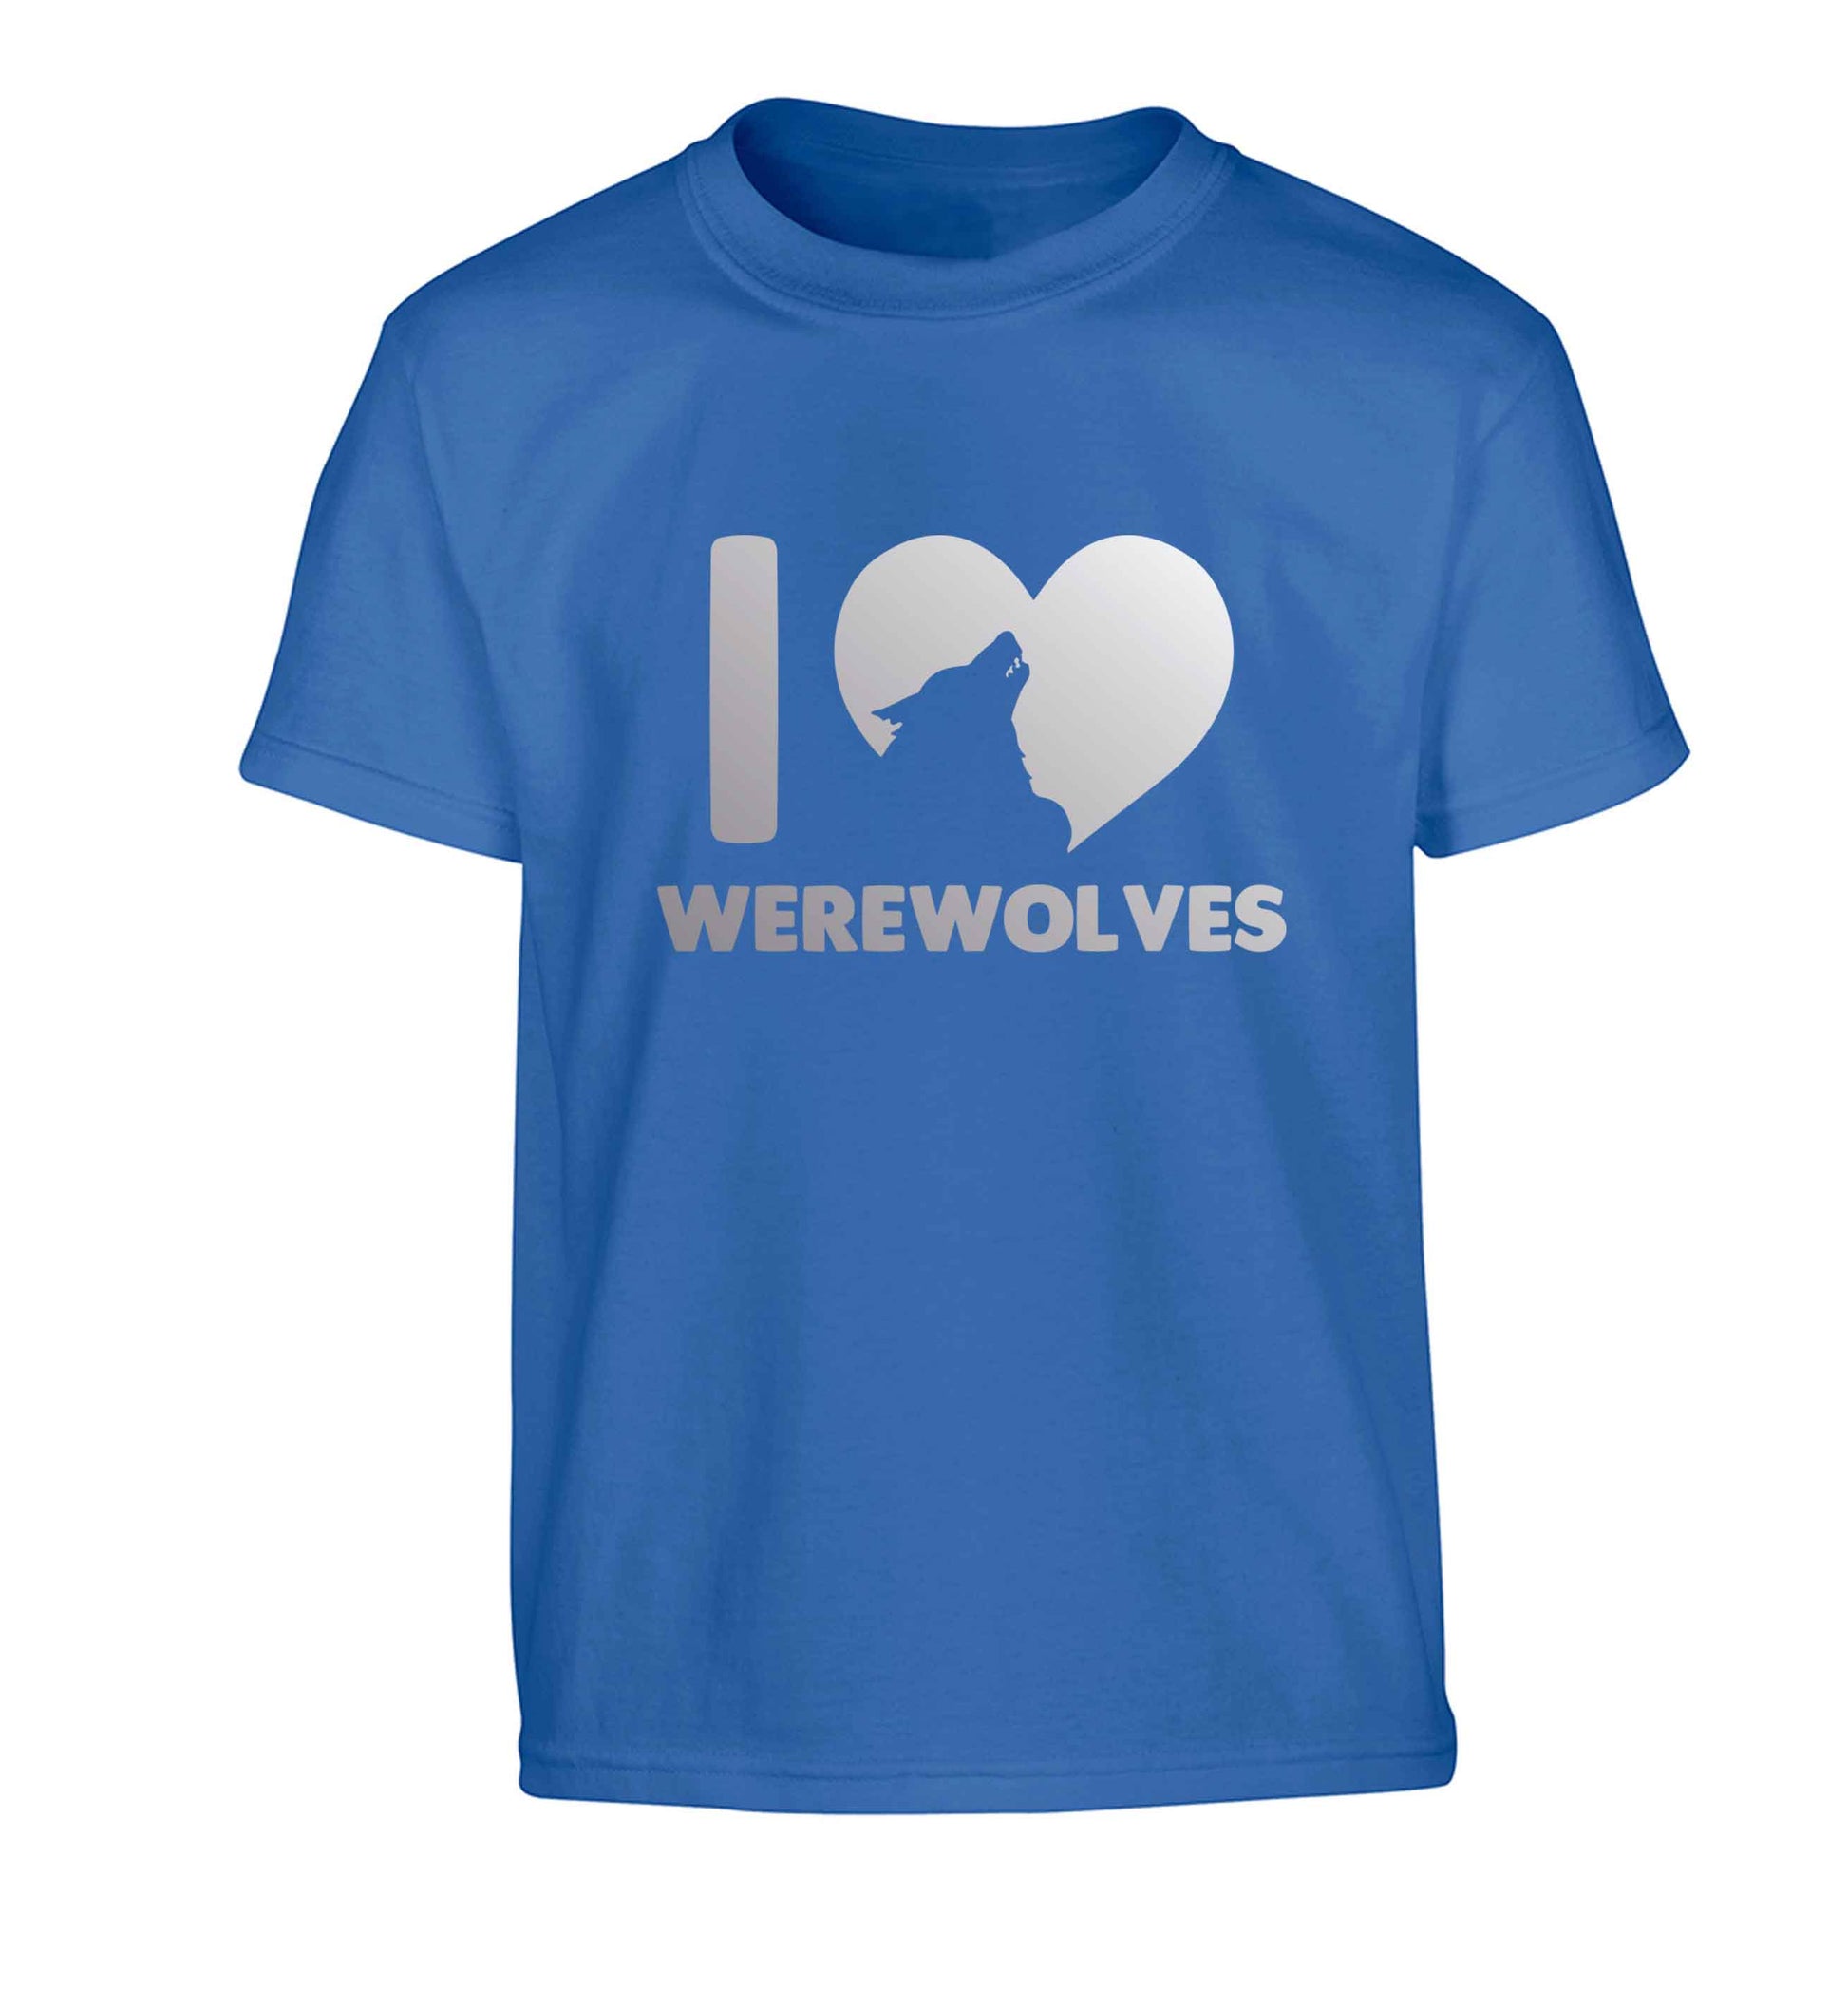 I love werewolves Children's blue Tshirt 12-13 Years